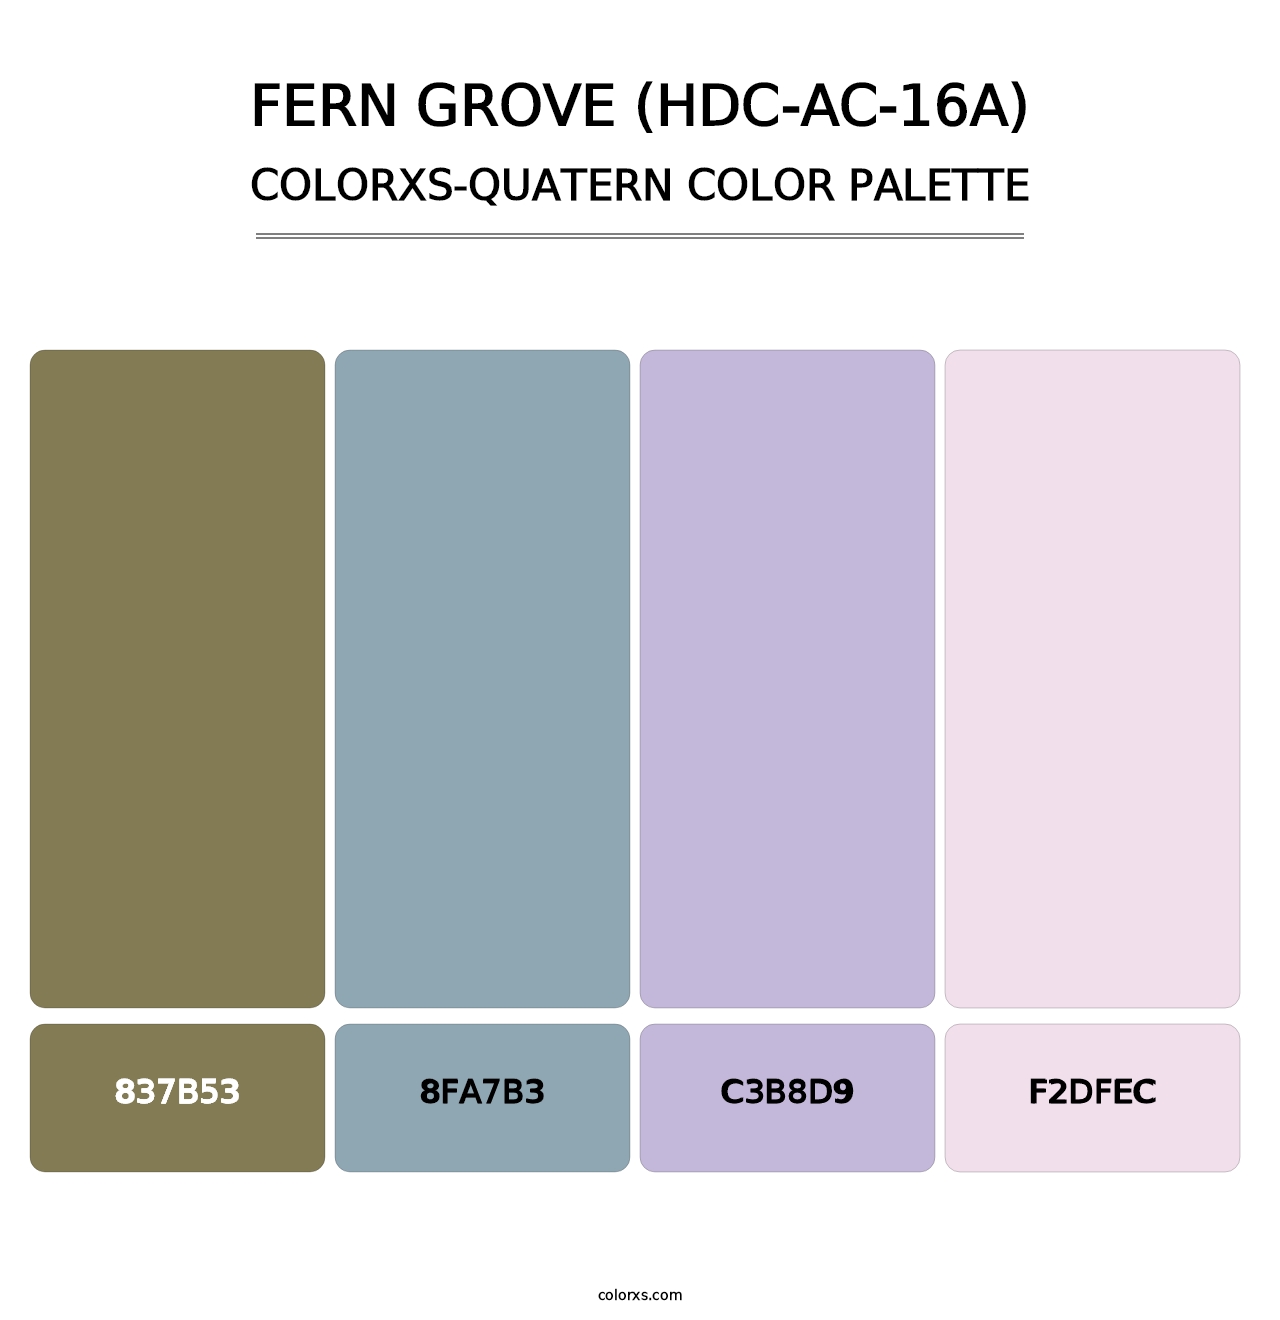 Fern Grove (HDC-AC-16A) - Colorxs Quatern Palette